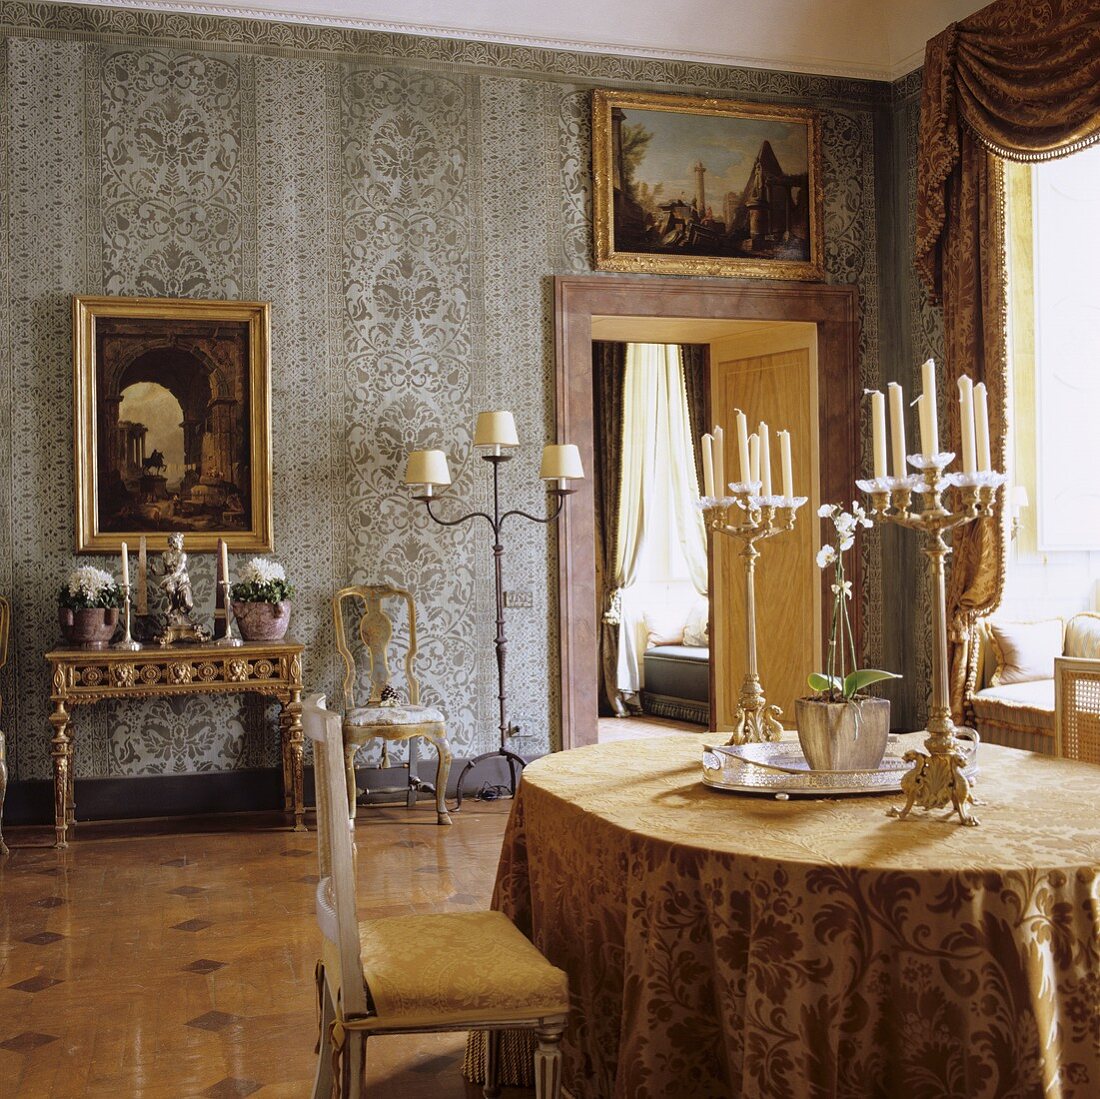 Esszimmer in einem Palazzo mit antiken Kerzenständern auf Tisch und Rokoko-Möbeln